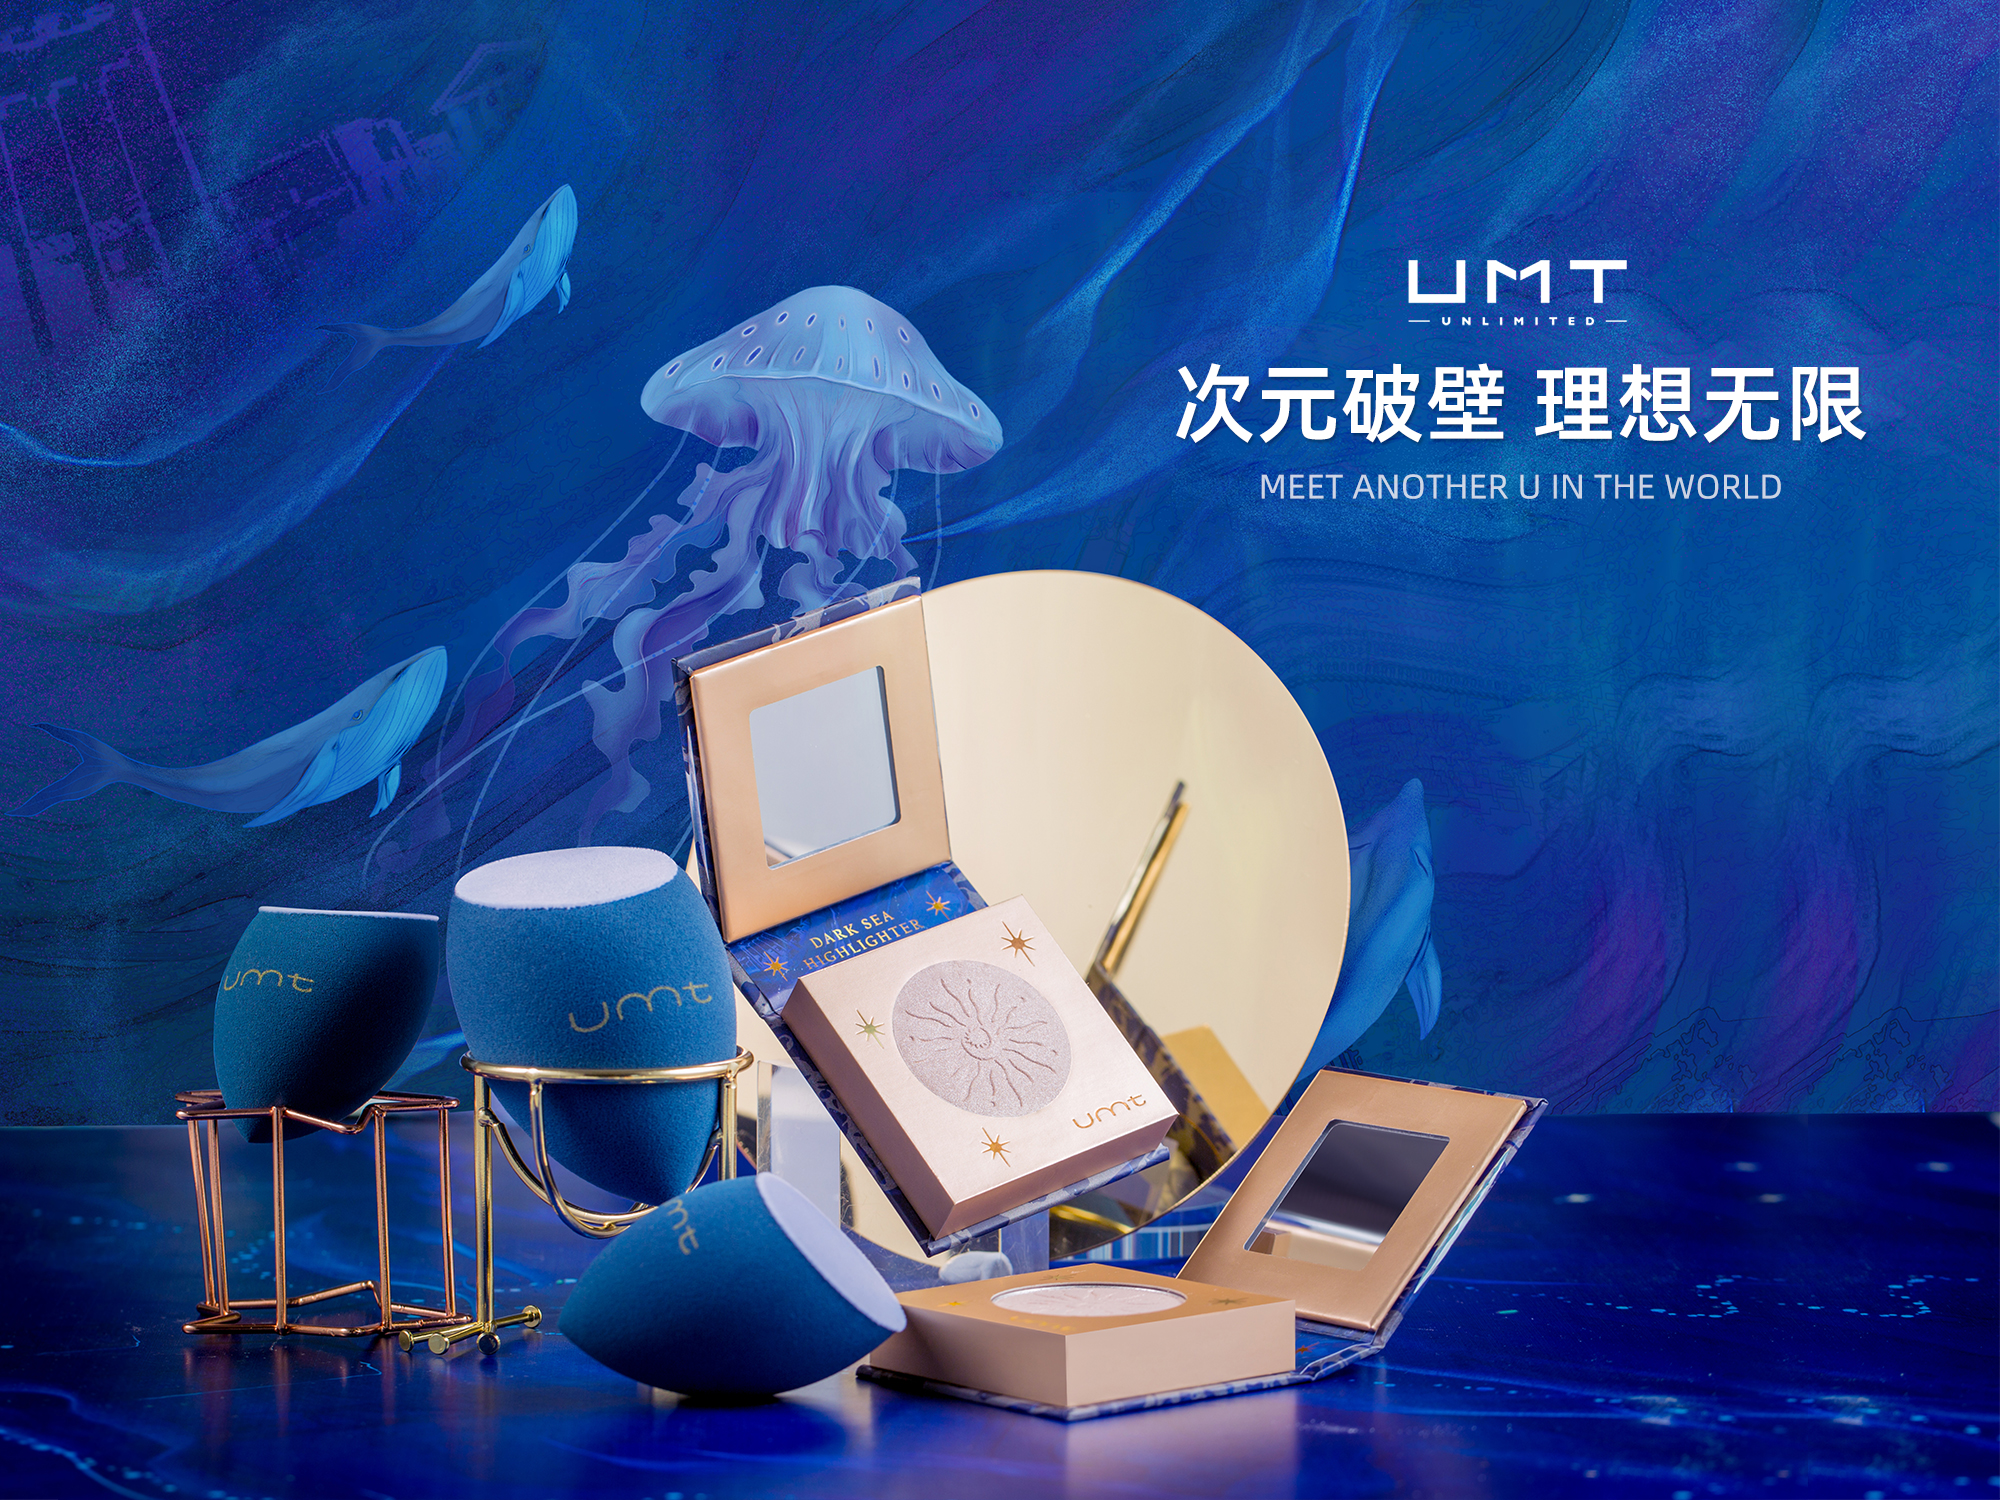 玻尿酸大厂福瑞达推首个彩妆品牌「UMT」，瞄准Z时代“U次元”美妆消费市场